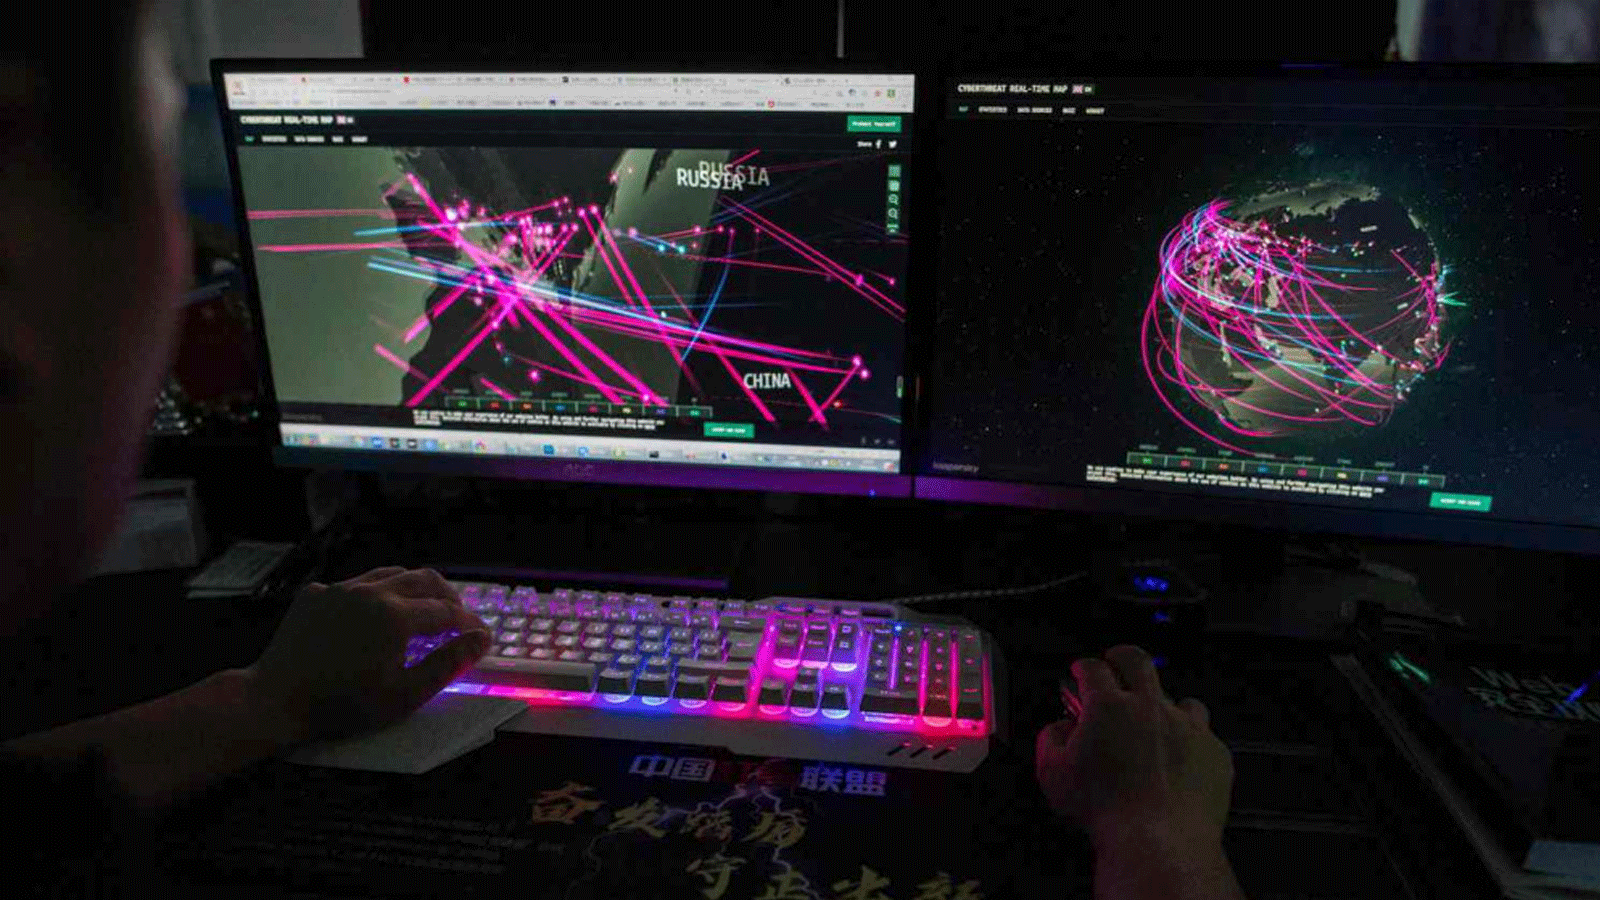 عضو في مجموعة القرصنة Red Hacker Alliance موقعًا إلكترونيًا يراقب الهجمات الإلكترونية العالمية على جهاز الكمبيوتر الخاص به في مكتبه في دونغقوان، الصين